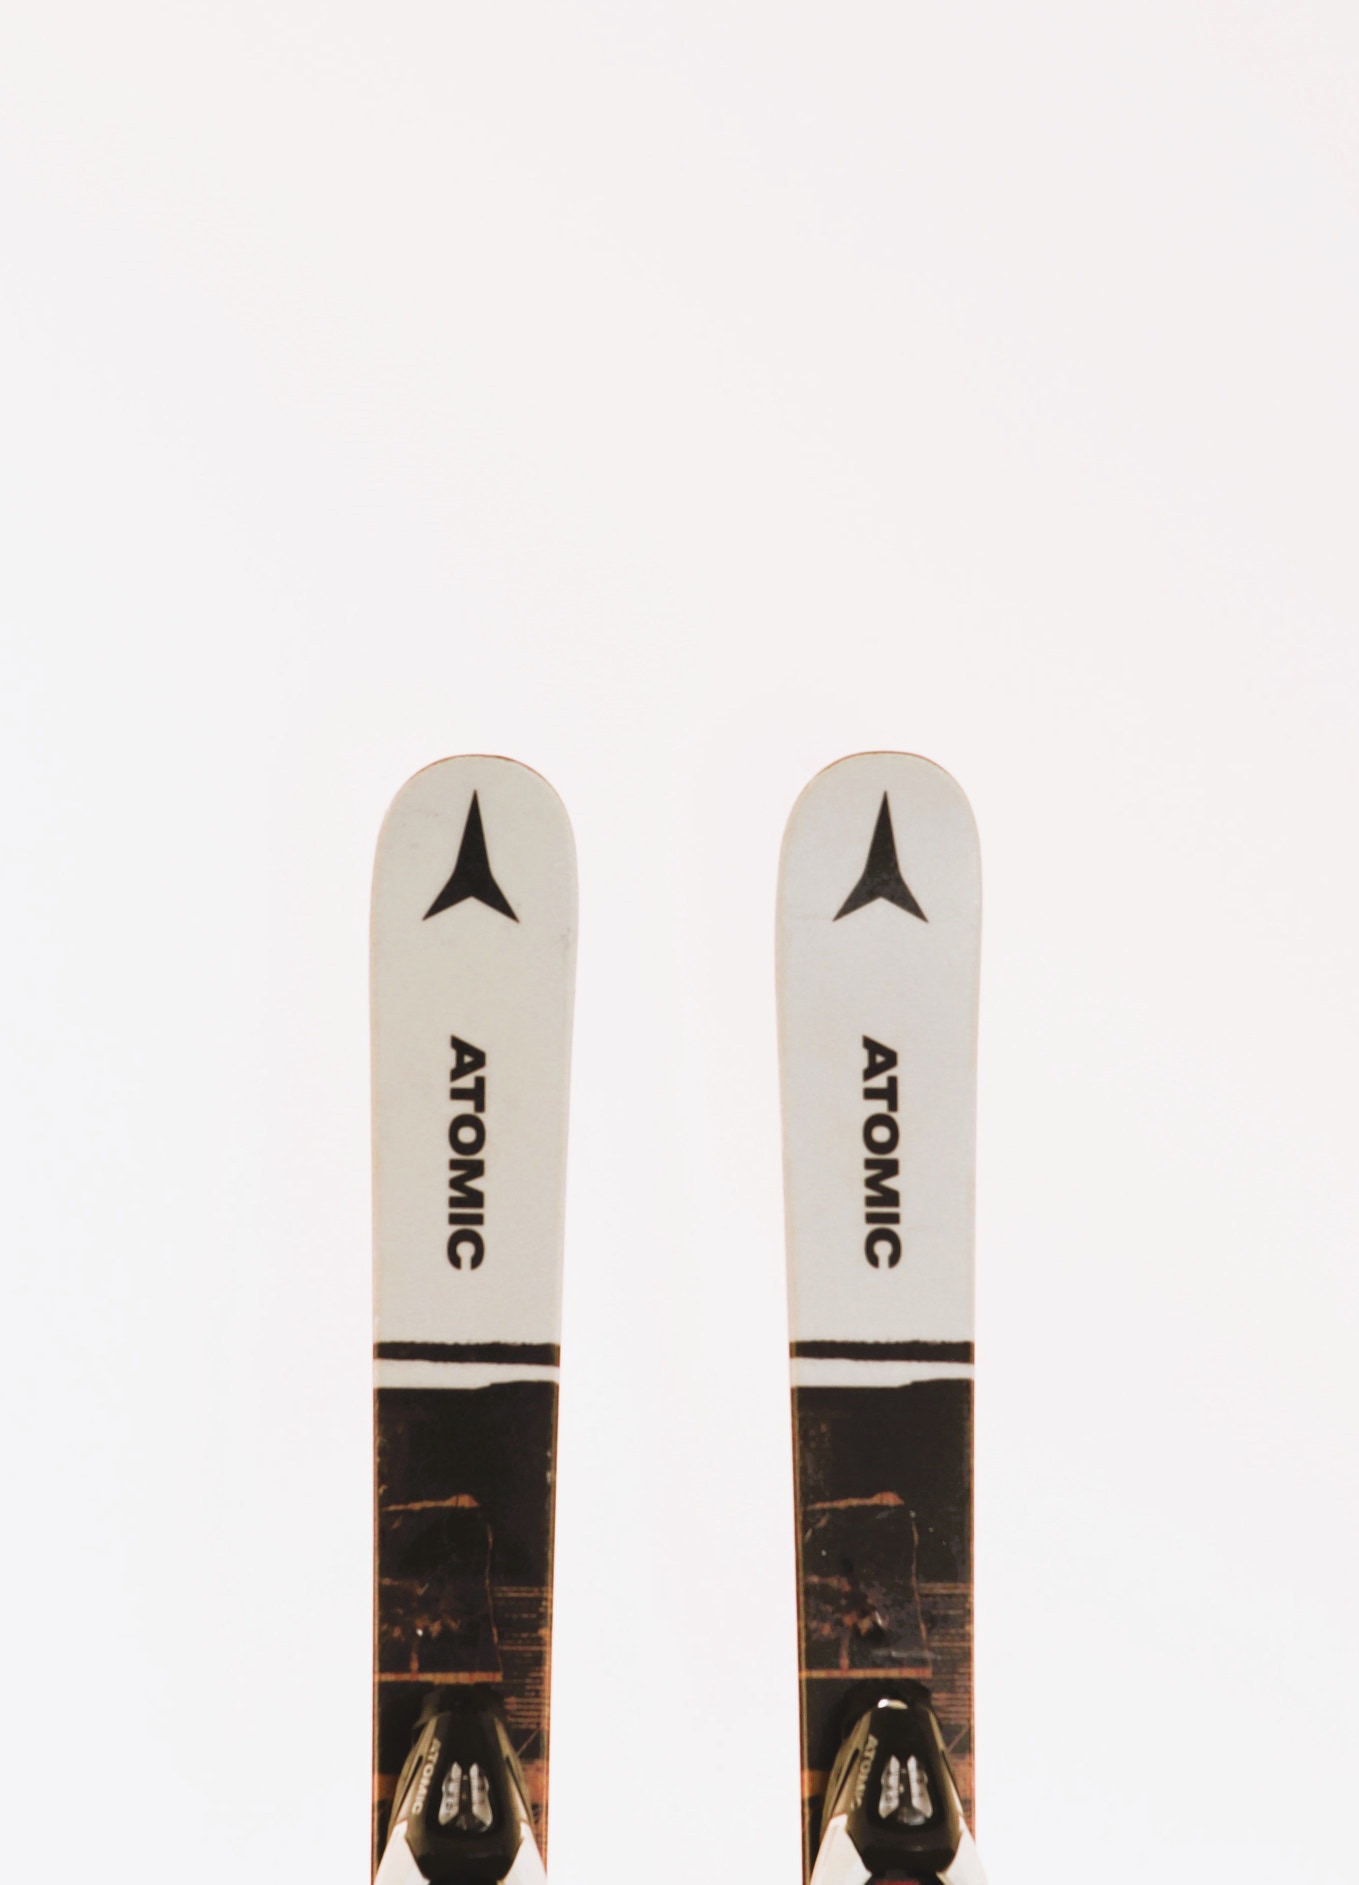 Used Atomic Punx Demo Ski with Atomic C5 GW Bindings Size 120 (Option 231120)